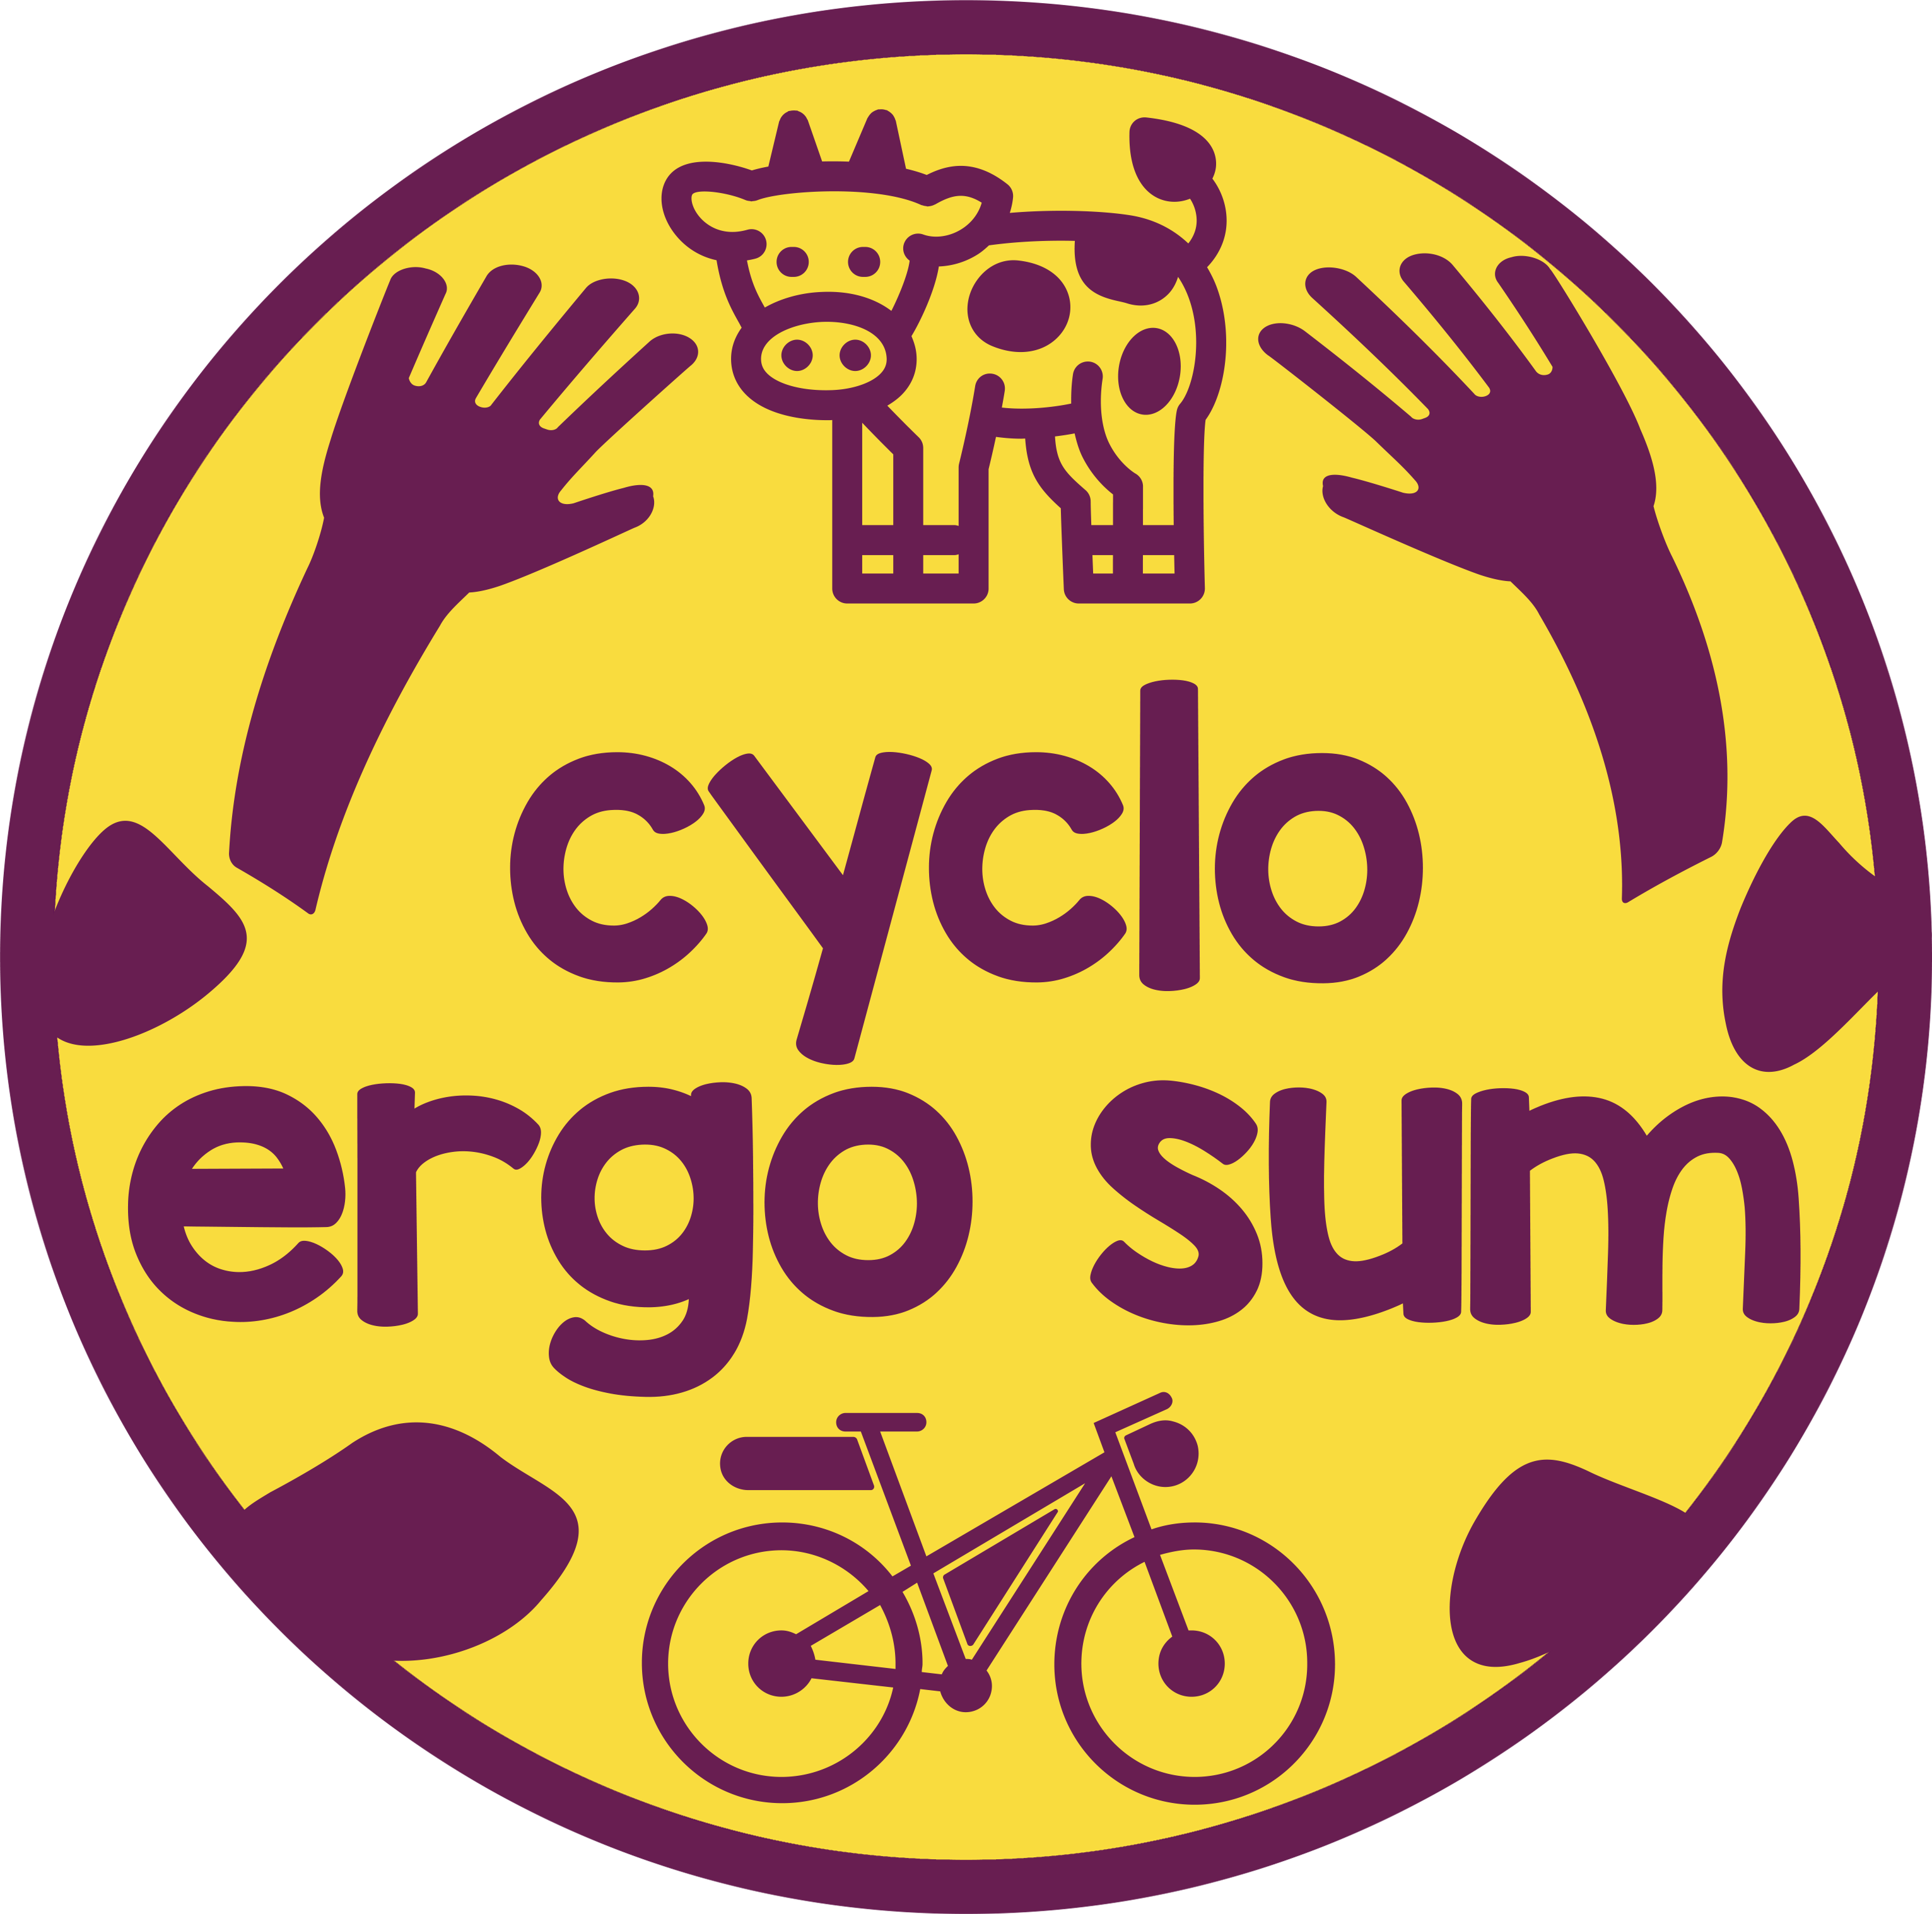 Cyclo Ergo Sum Logo